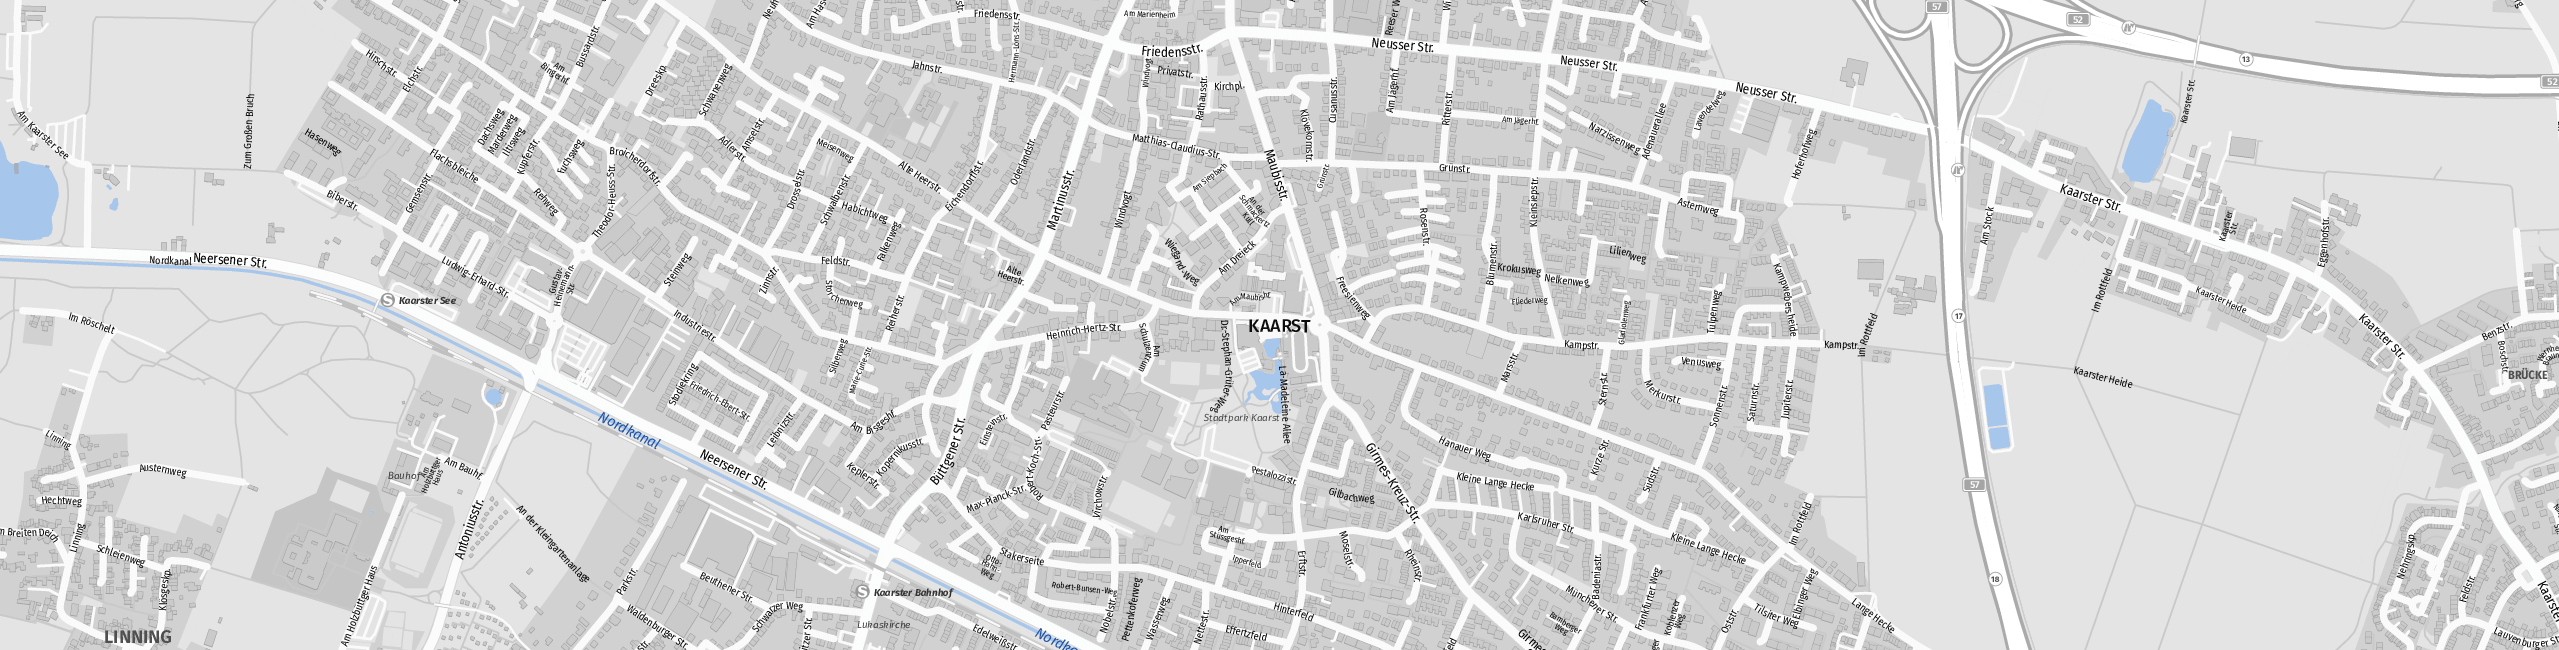 Stadtplan Kaarst zum Downloaden.